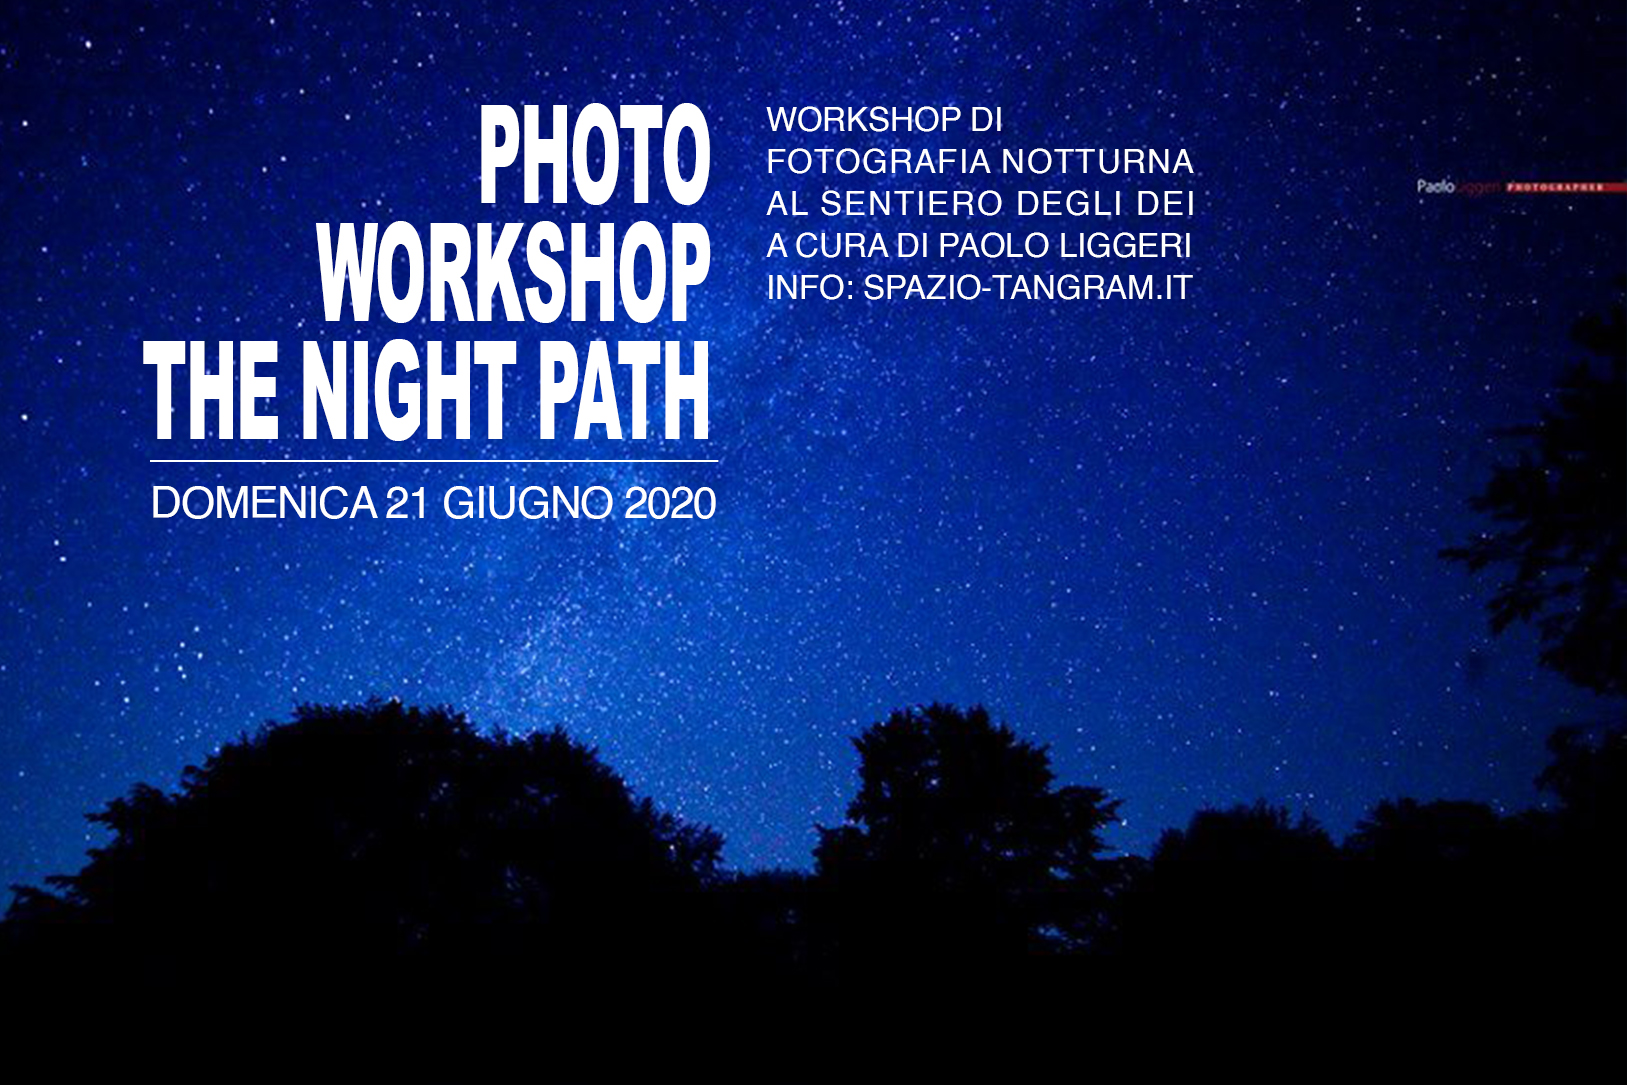 workshop di fotografia notturna